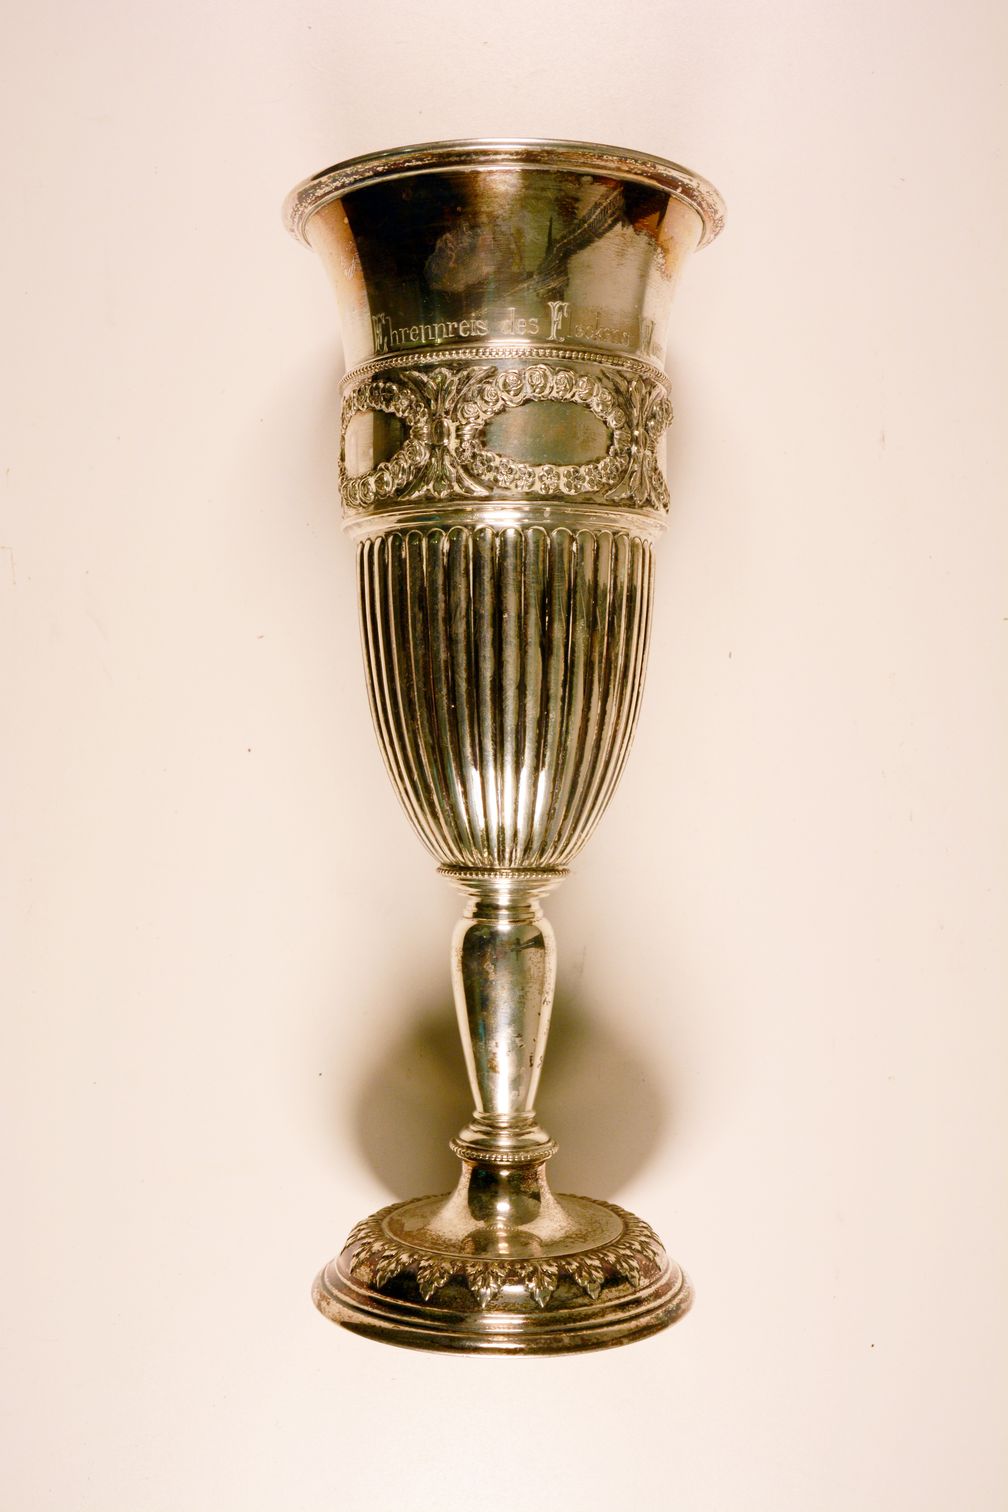 Ein Pokal in 800er Silber mit Gravur: "Bezirkstierschau zu Weener 1914 Ehrenpreis des Fleckens Weener" Bild: Polizei